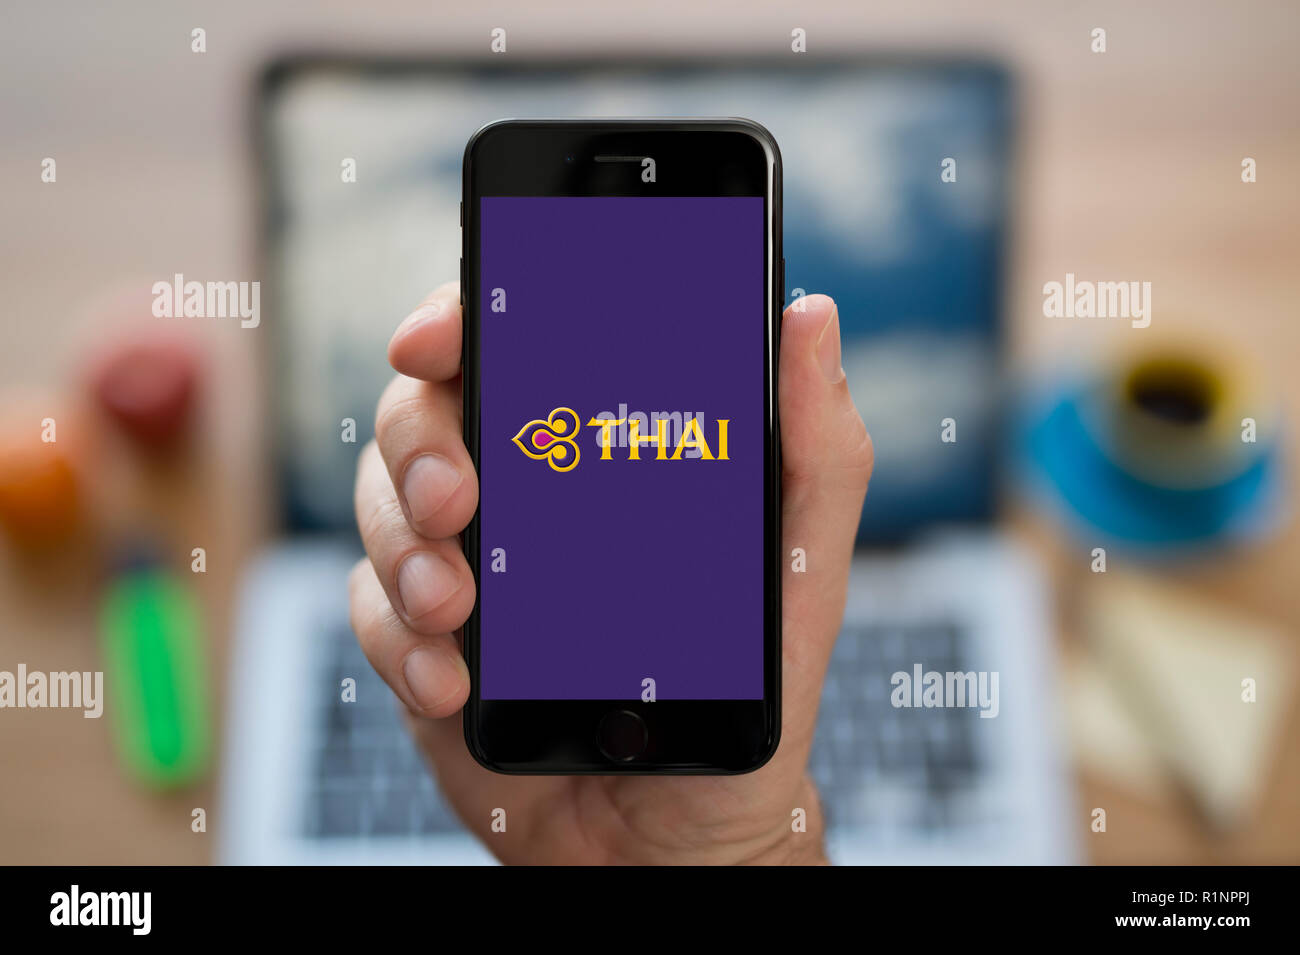 Un uomo guarda al suo iPhone che visualizza la Thai Airways logo, mentre se ne sta seduto alla sua scrivania per computer (solo uso editoriale). Foto Stock